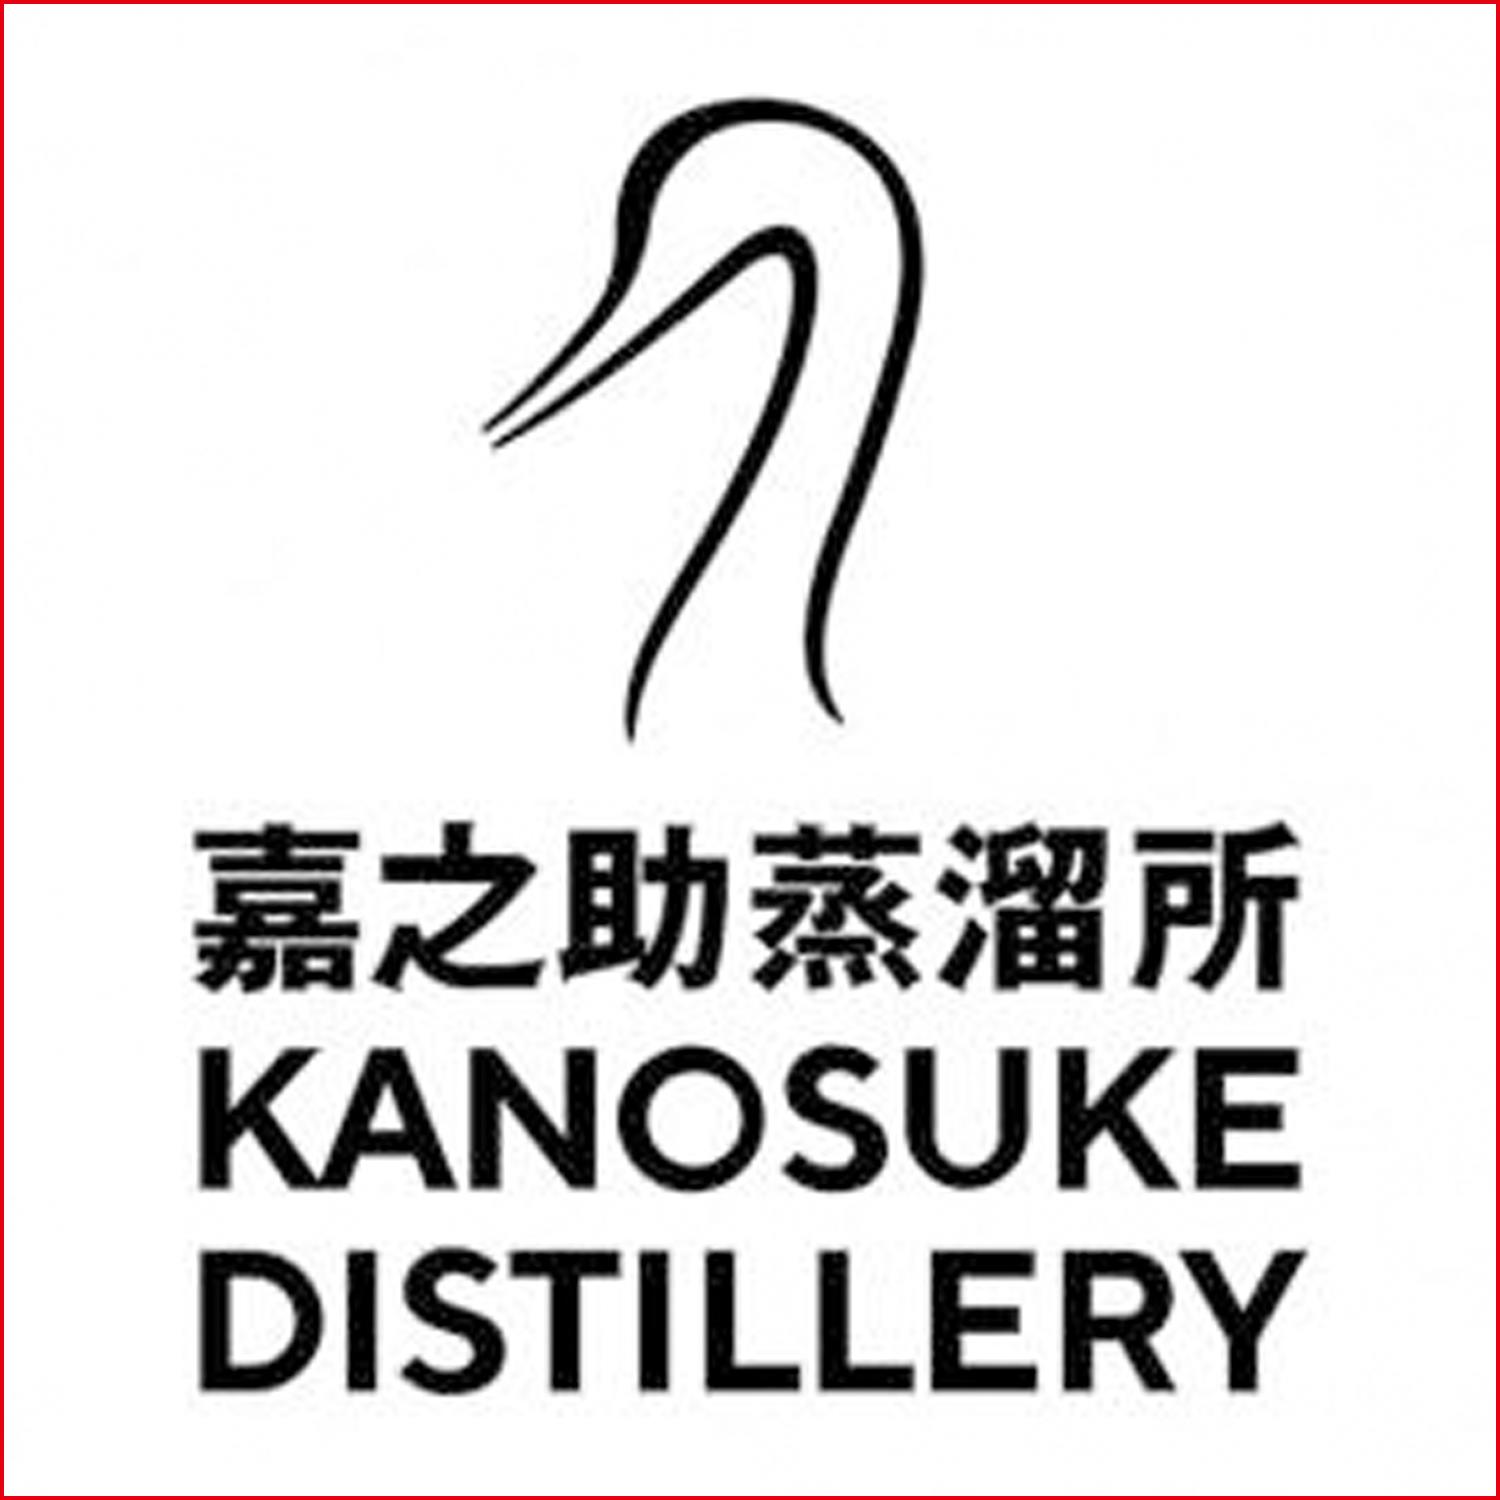 嘉之助蒸餾所 Kanosuke